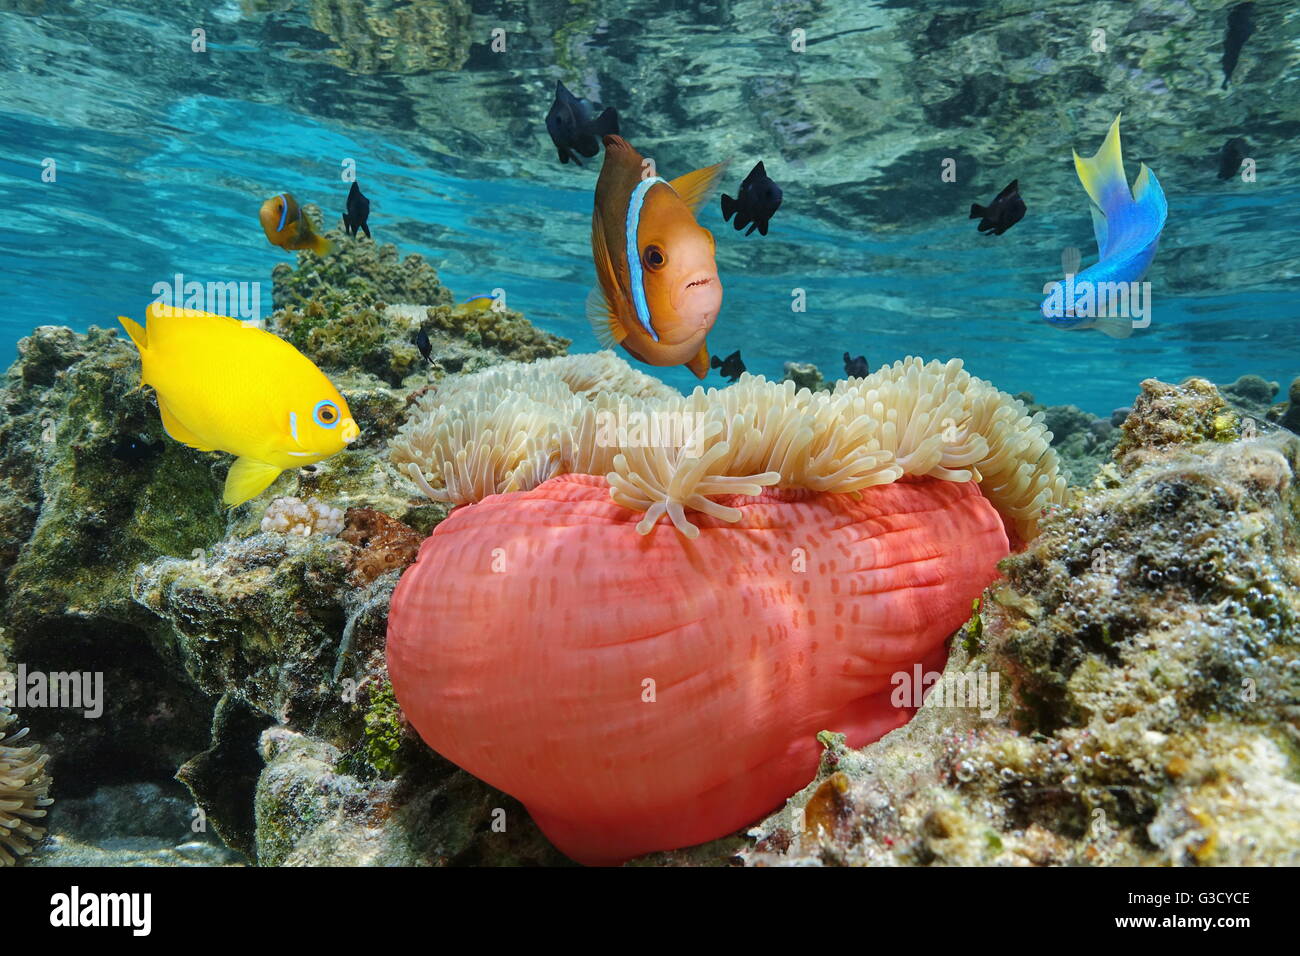 Bunte tropische Fische mit einer prächtigen Anemone im flachen Wasser, Bora Bora, Pazifik, Französisch-Polynesien Stockfoto